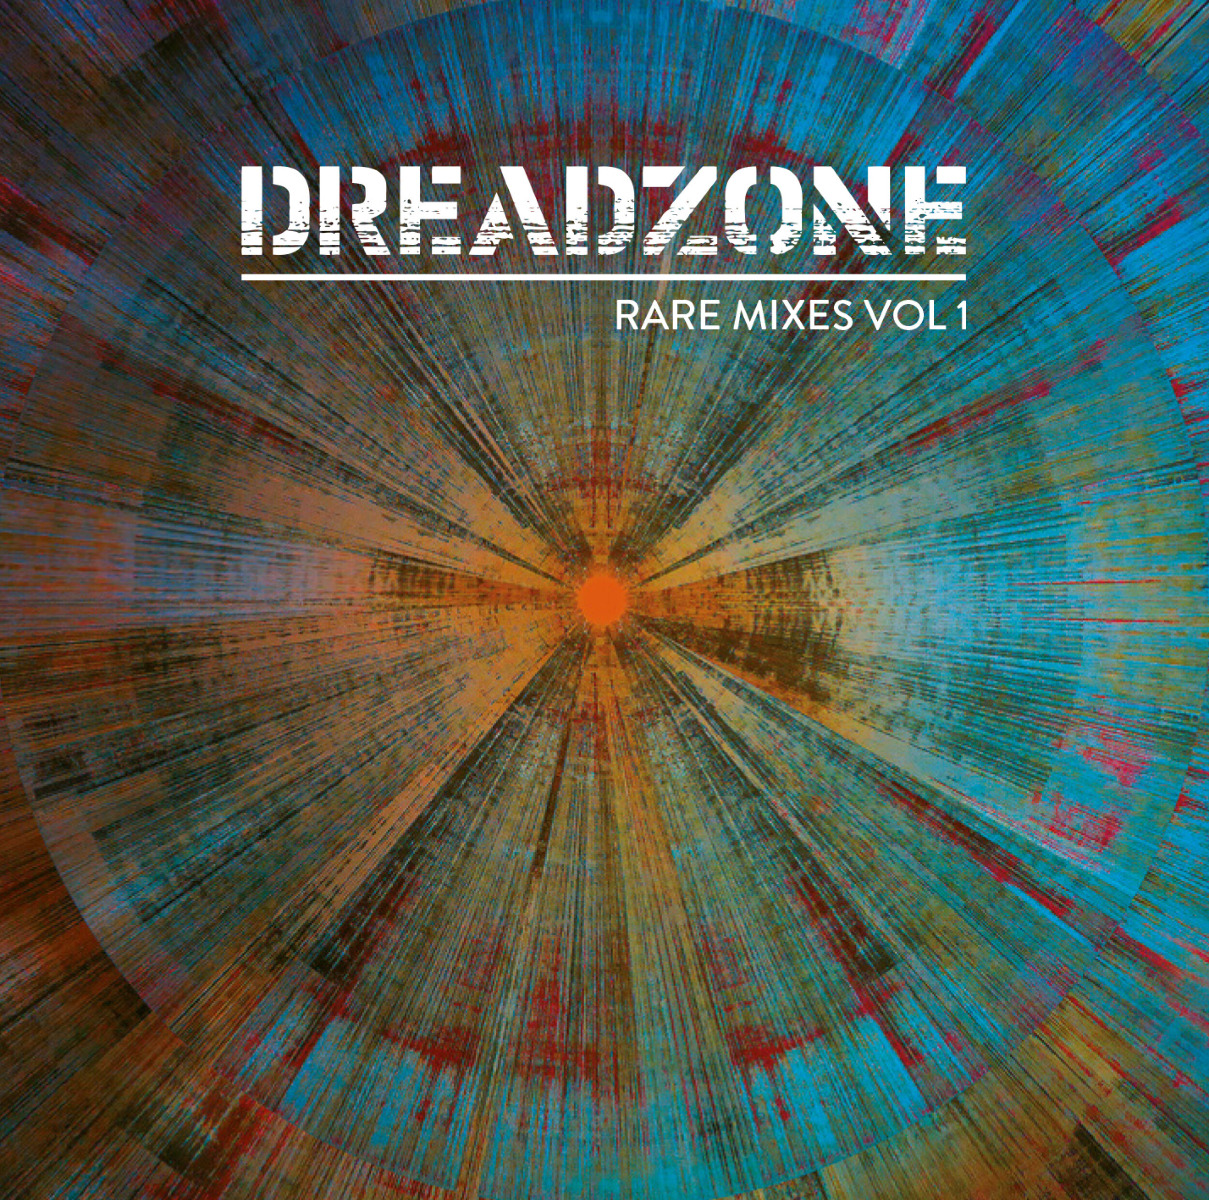 Dreadzone - Rare Mixes Vol 1(RSD 21) (DOLP)